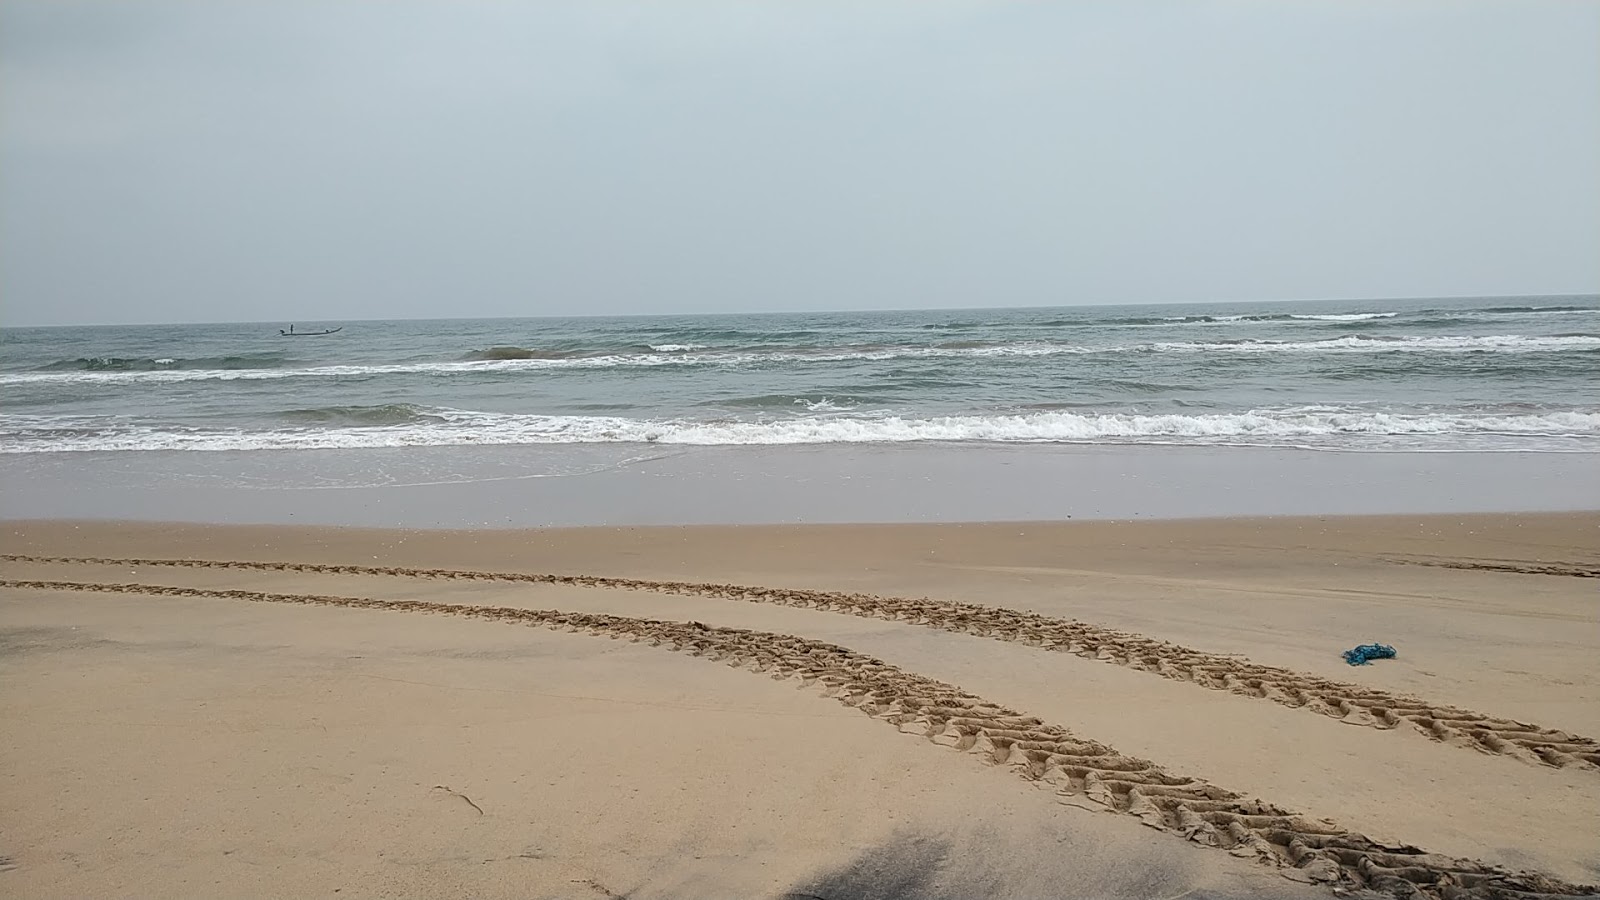 Fotografie cu Govundlapalem Beach cu o suprafață de nisip strălucitor